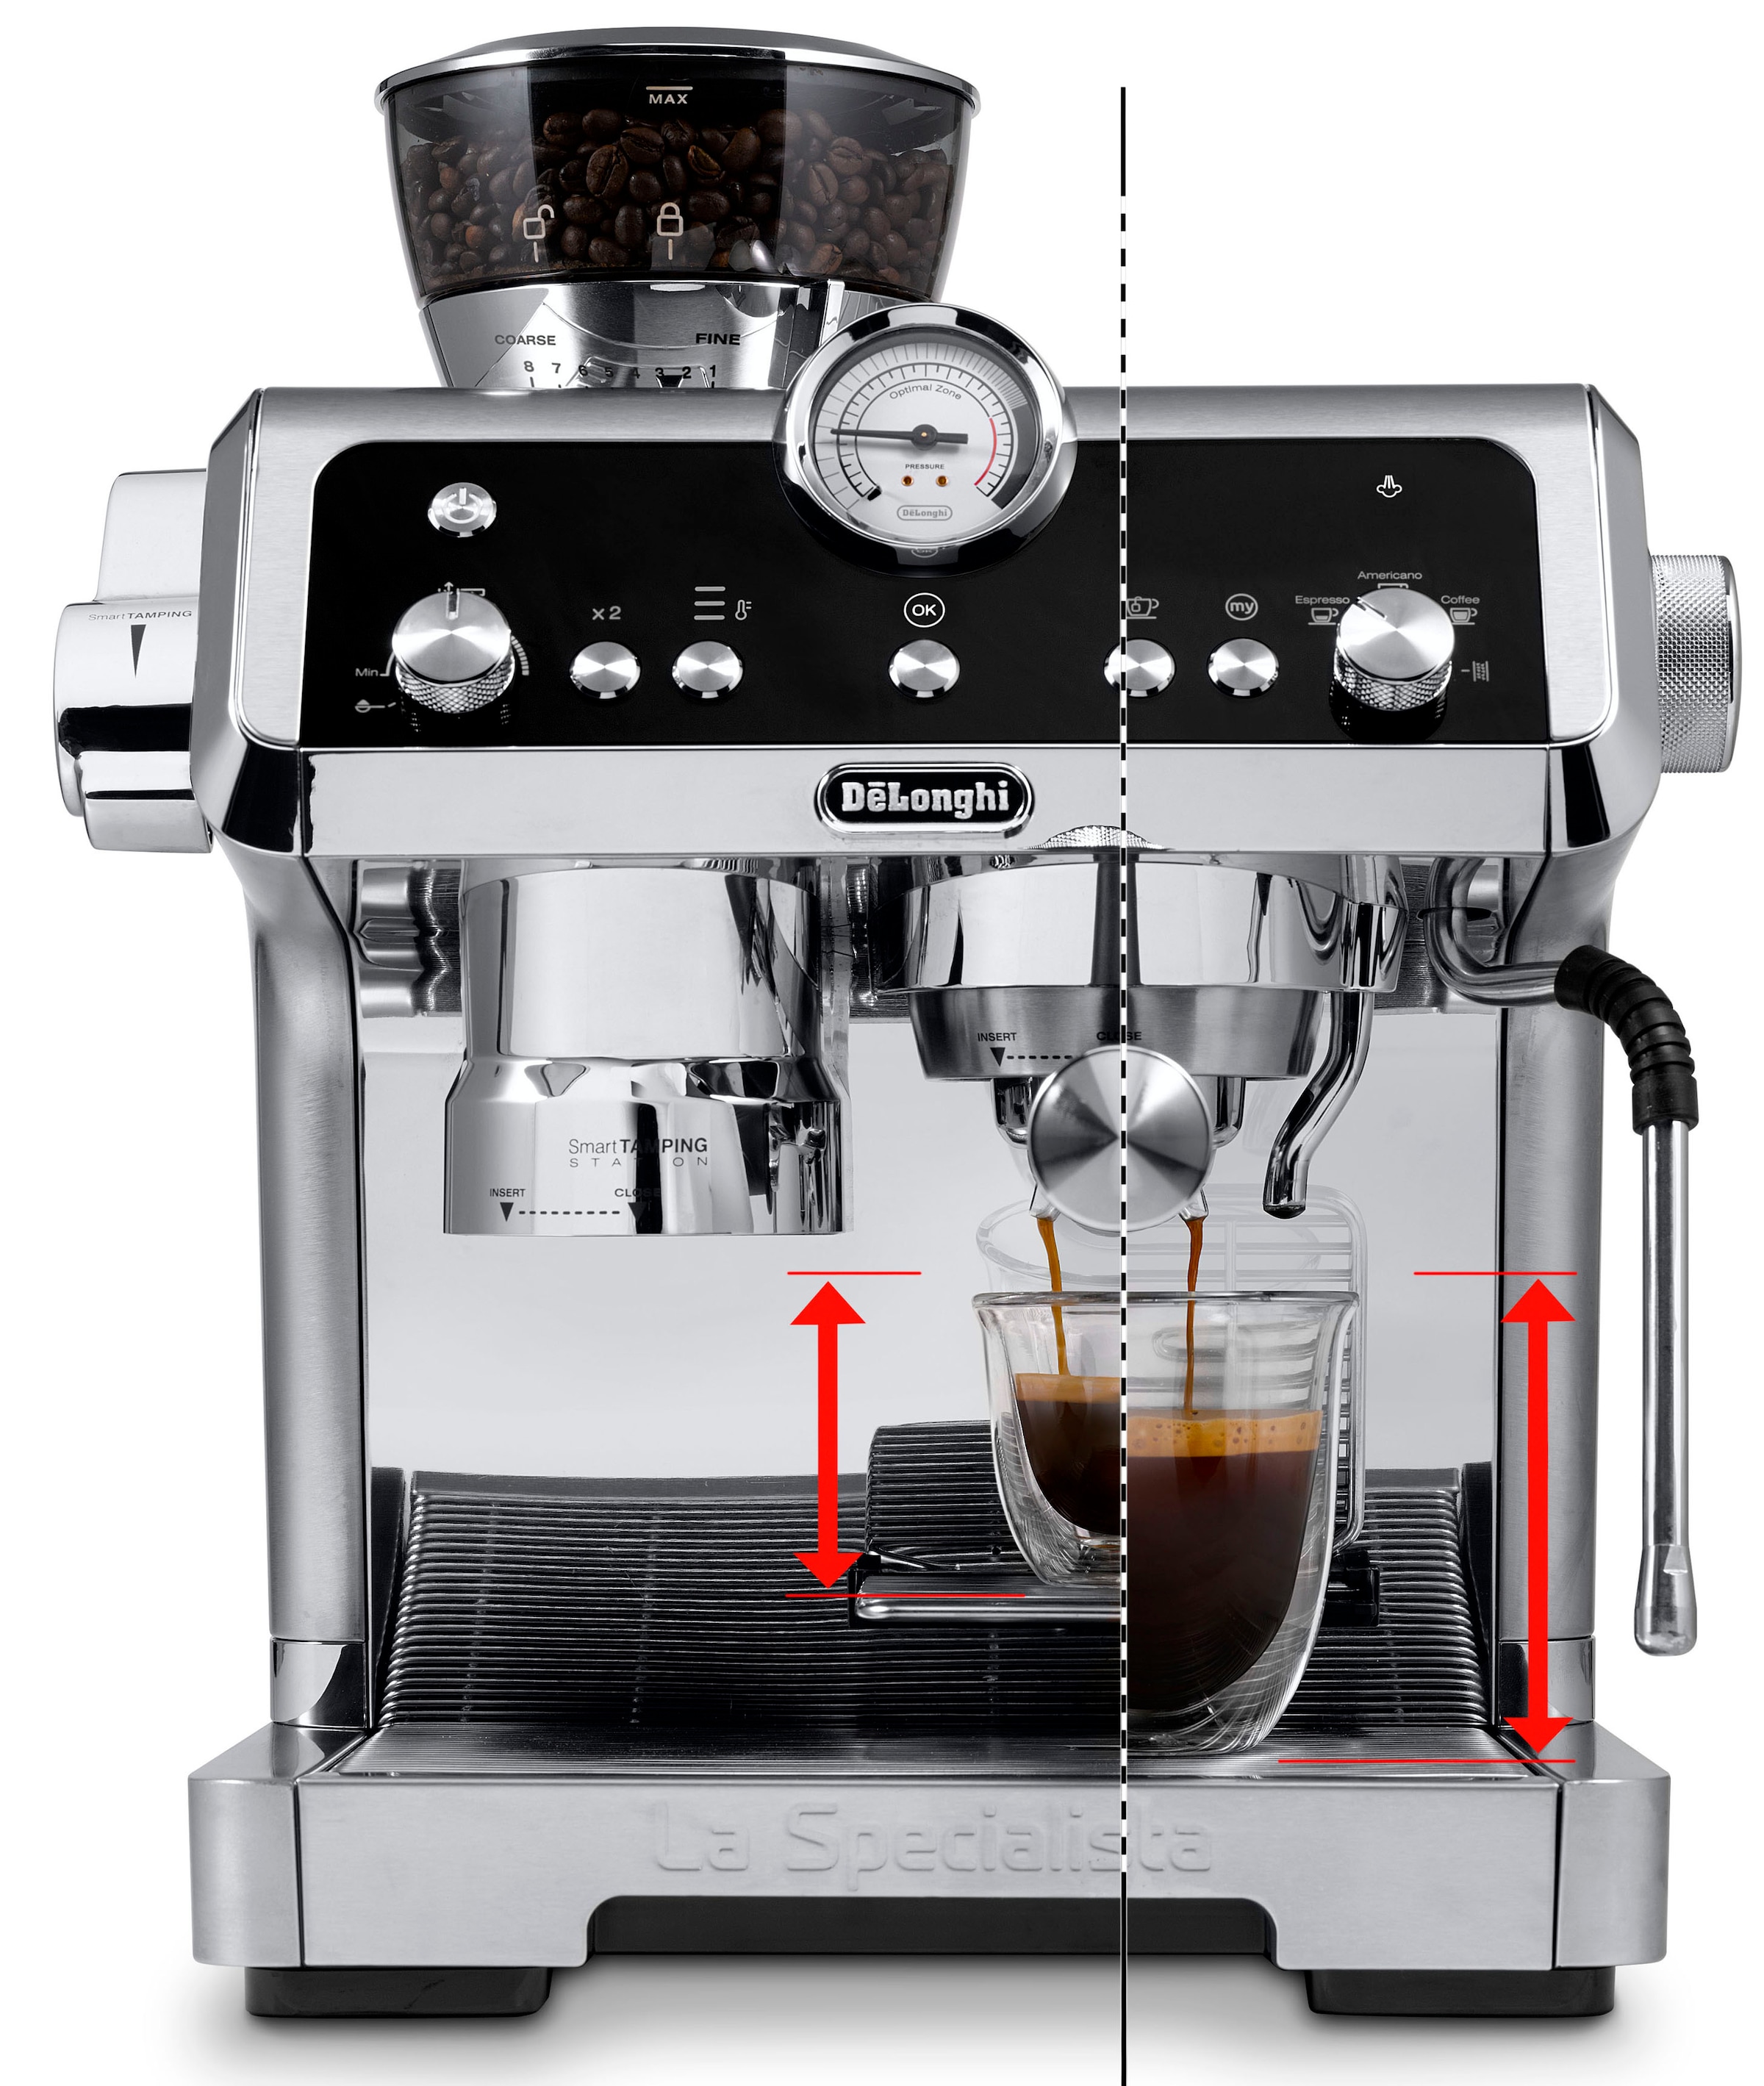 online liefern Espressomaschine – Wir kaufen bei Quelle